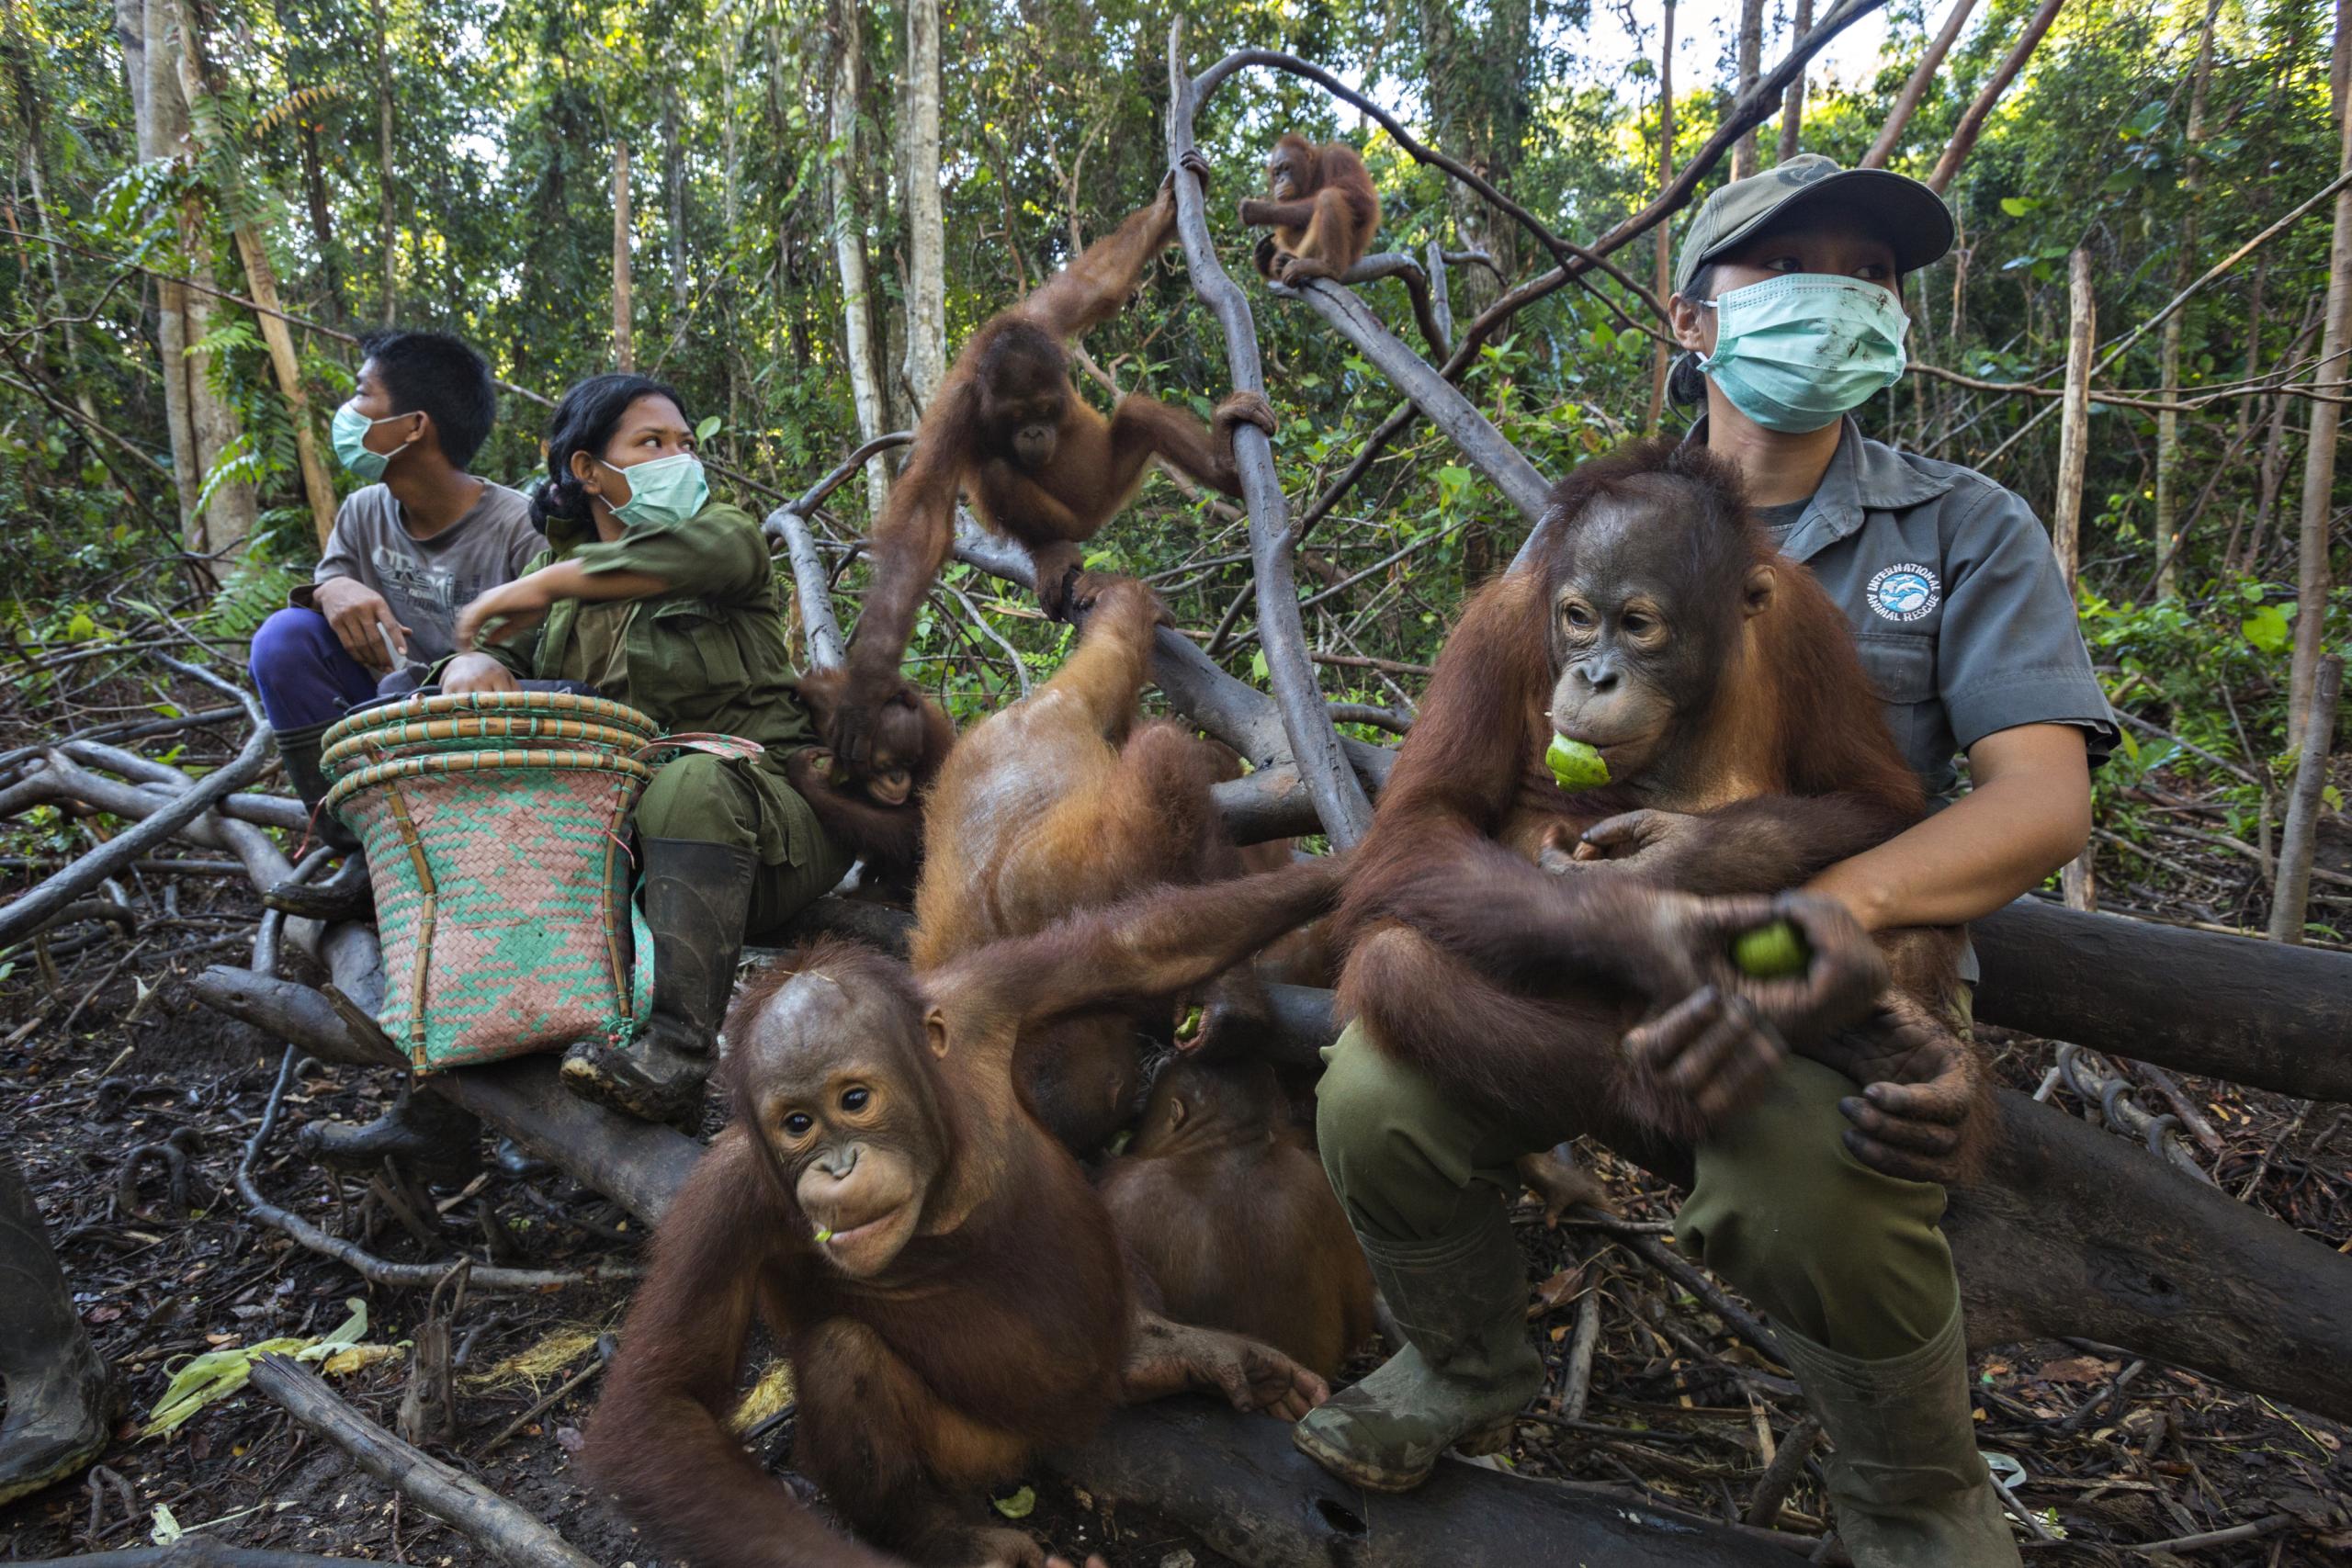 Potret orangutan di hutan terbakar jadi foto jurnalistik terbaik dunia